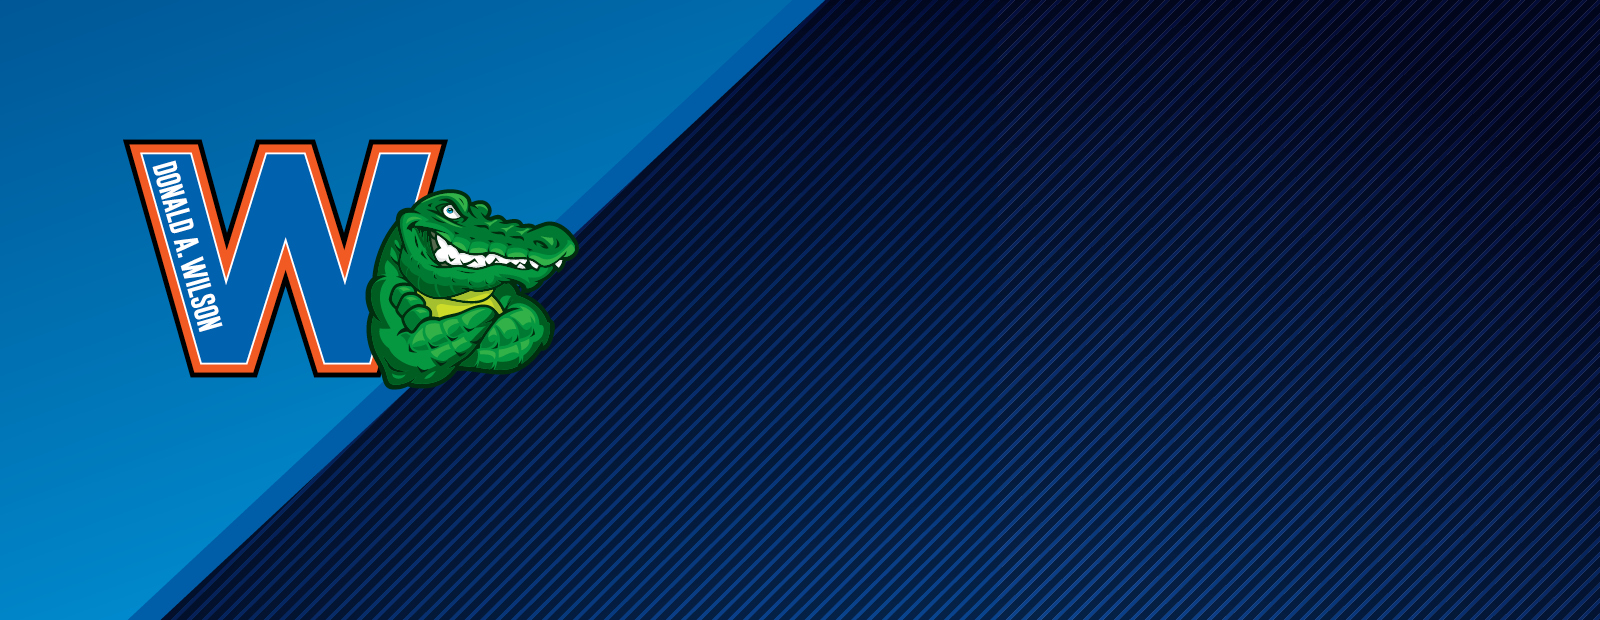 blue background with gator logo